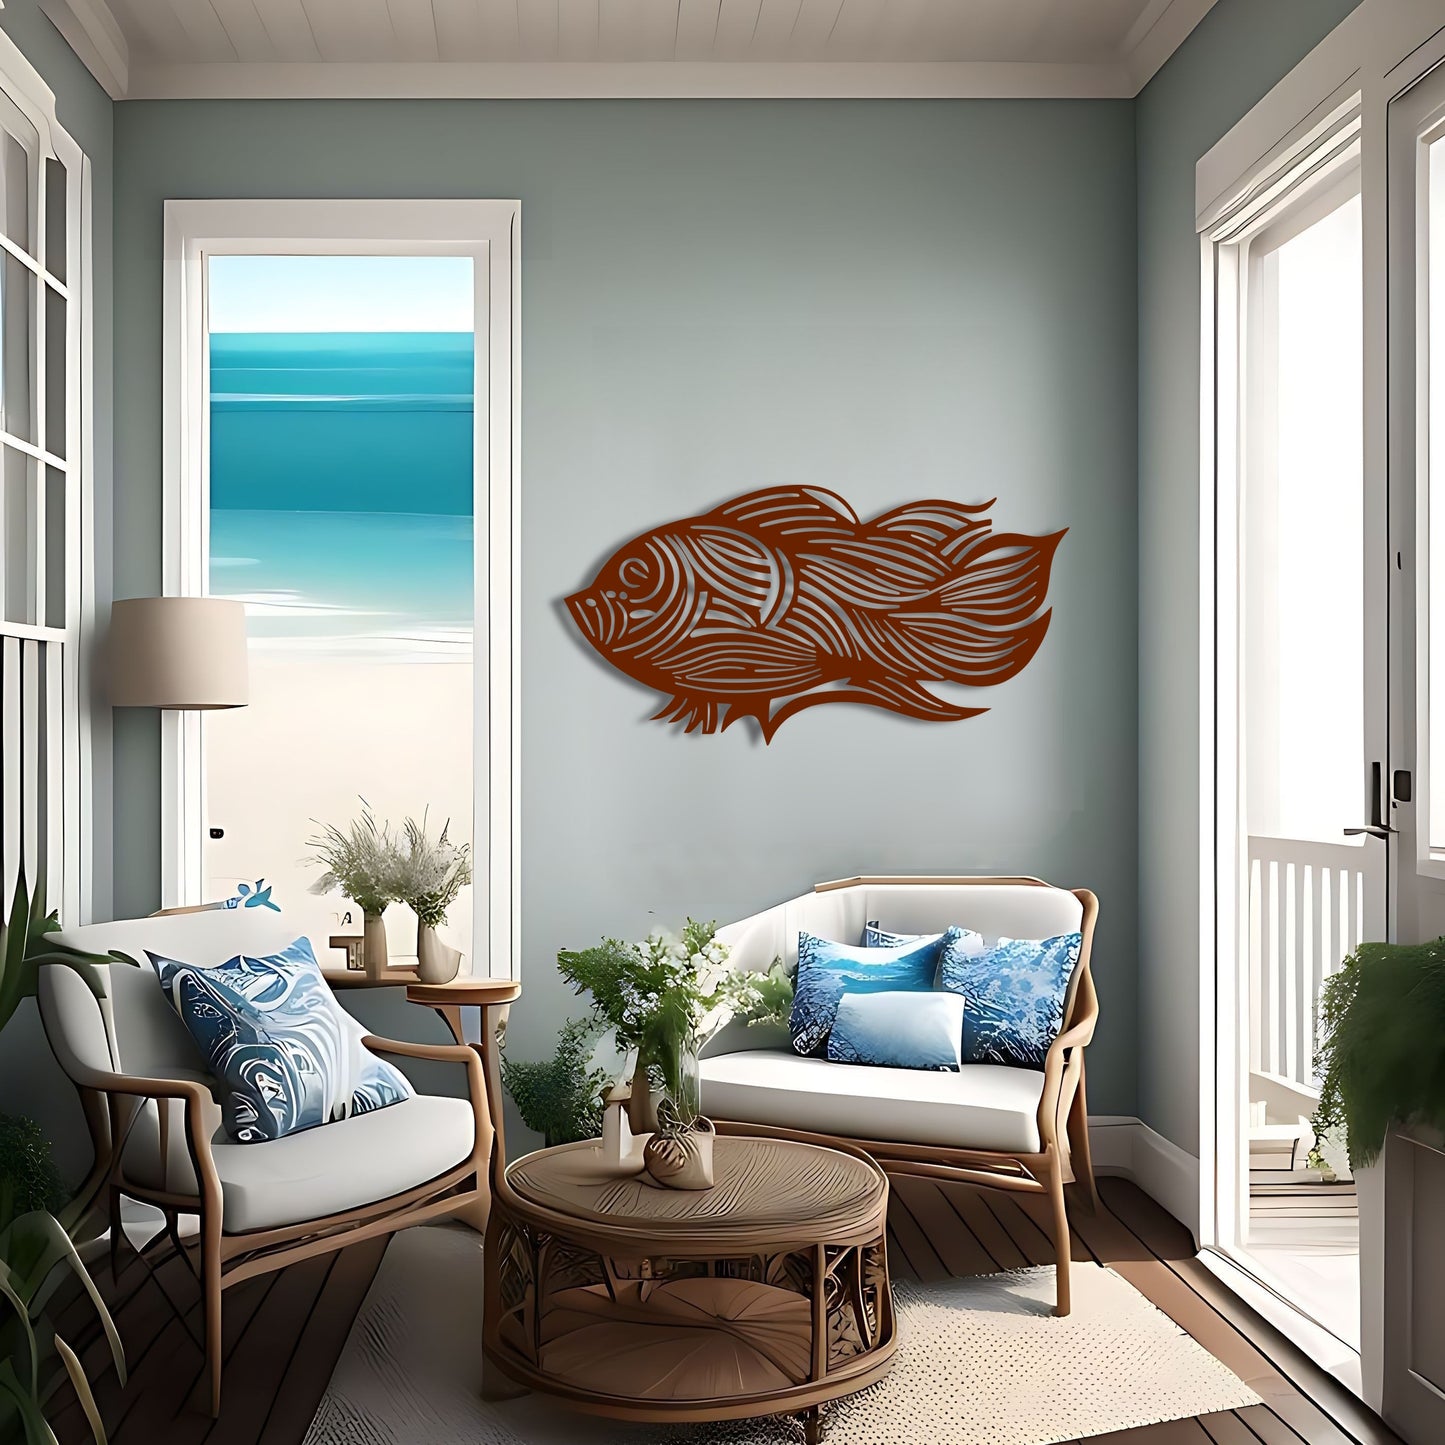 海の流れるライン - 抽象的な魚メタルウォールアート